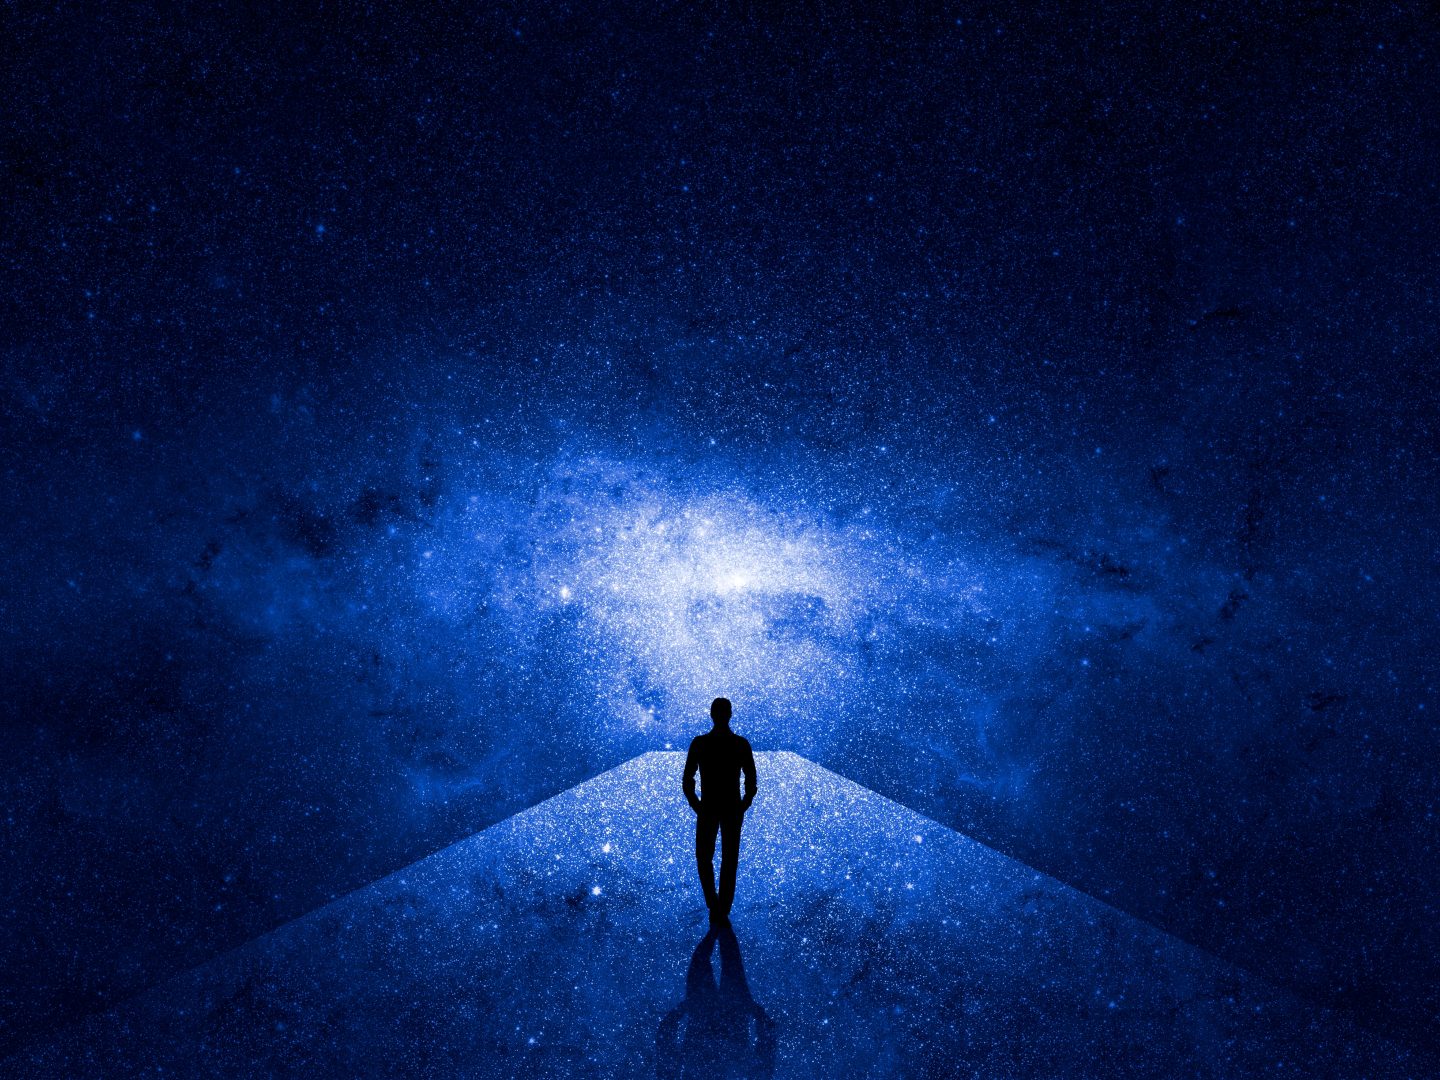 Man walking through the universe 2021 08 29 05 54 54 utc